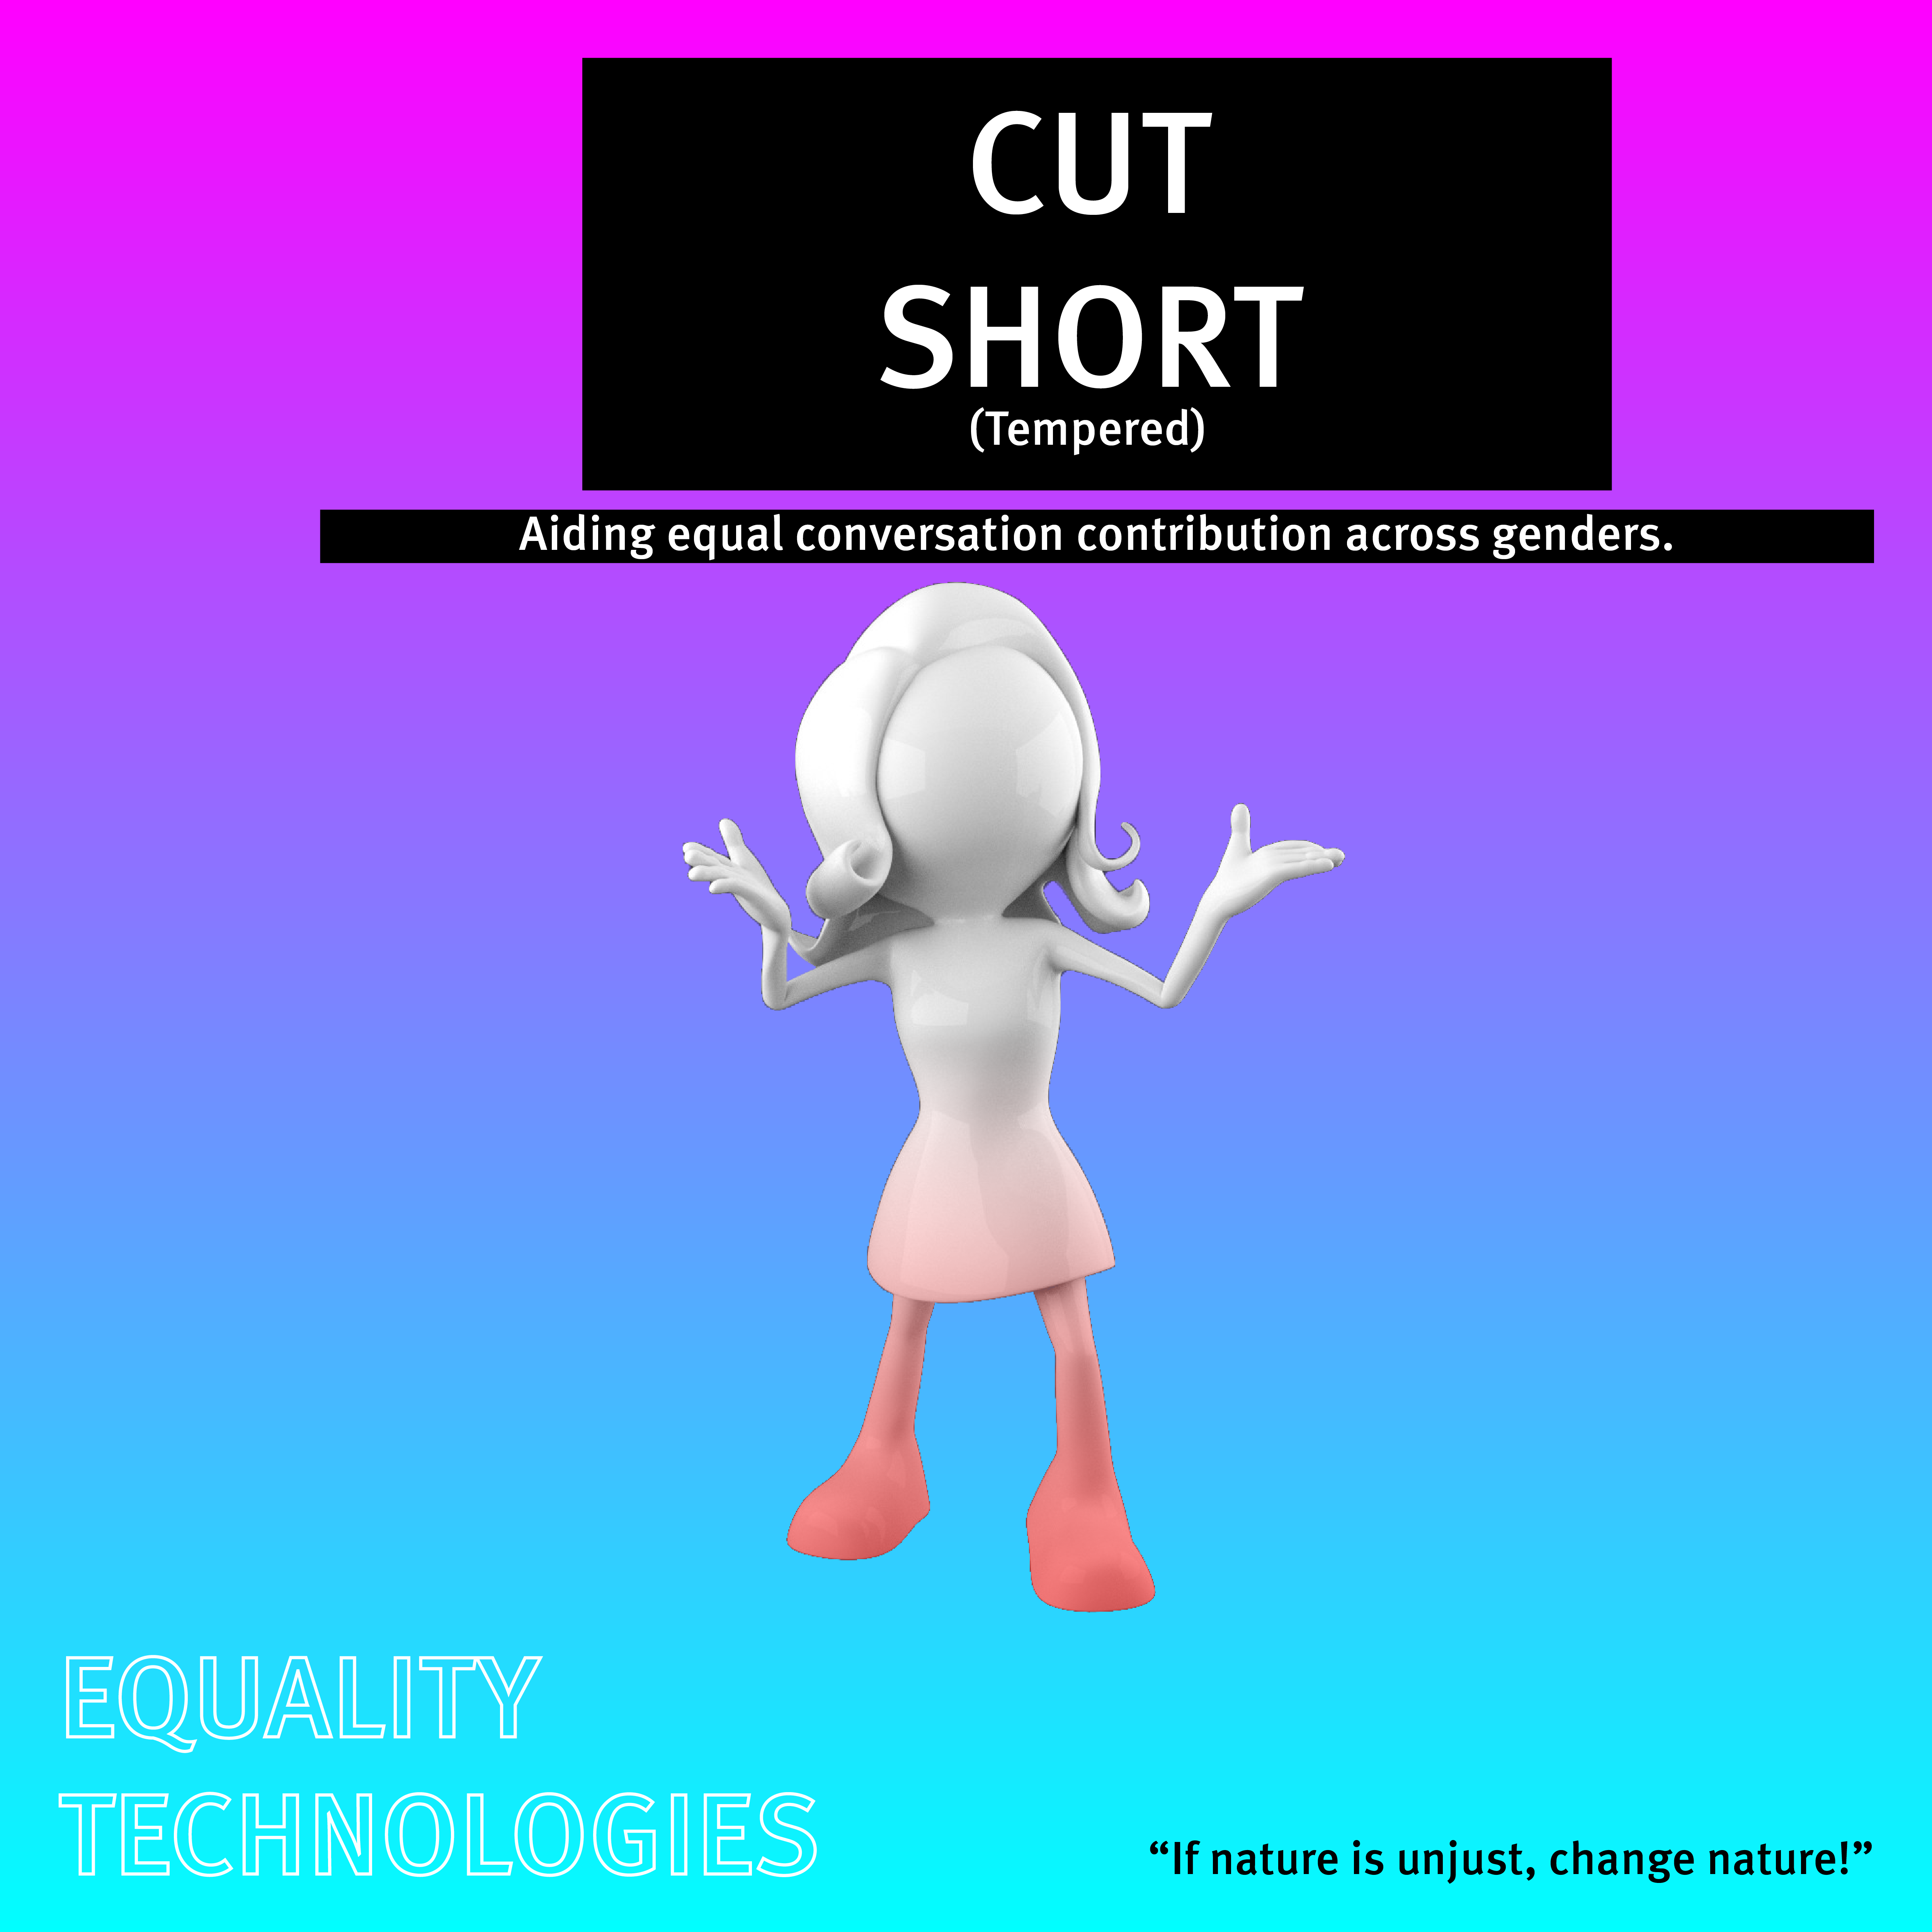 Cut Short animated image